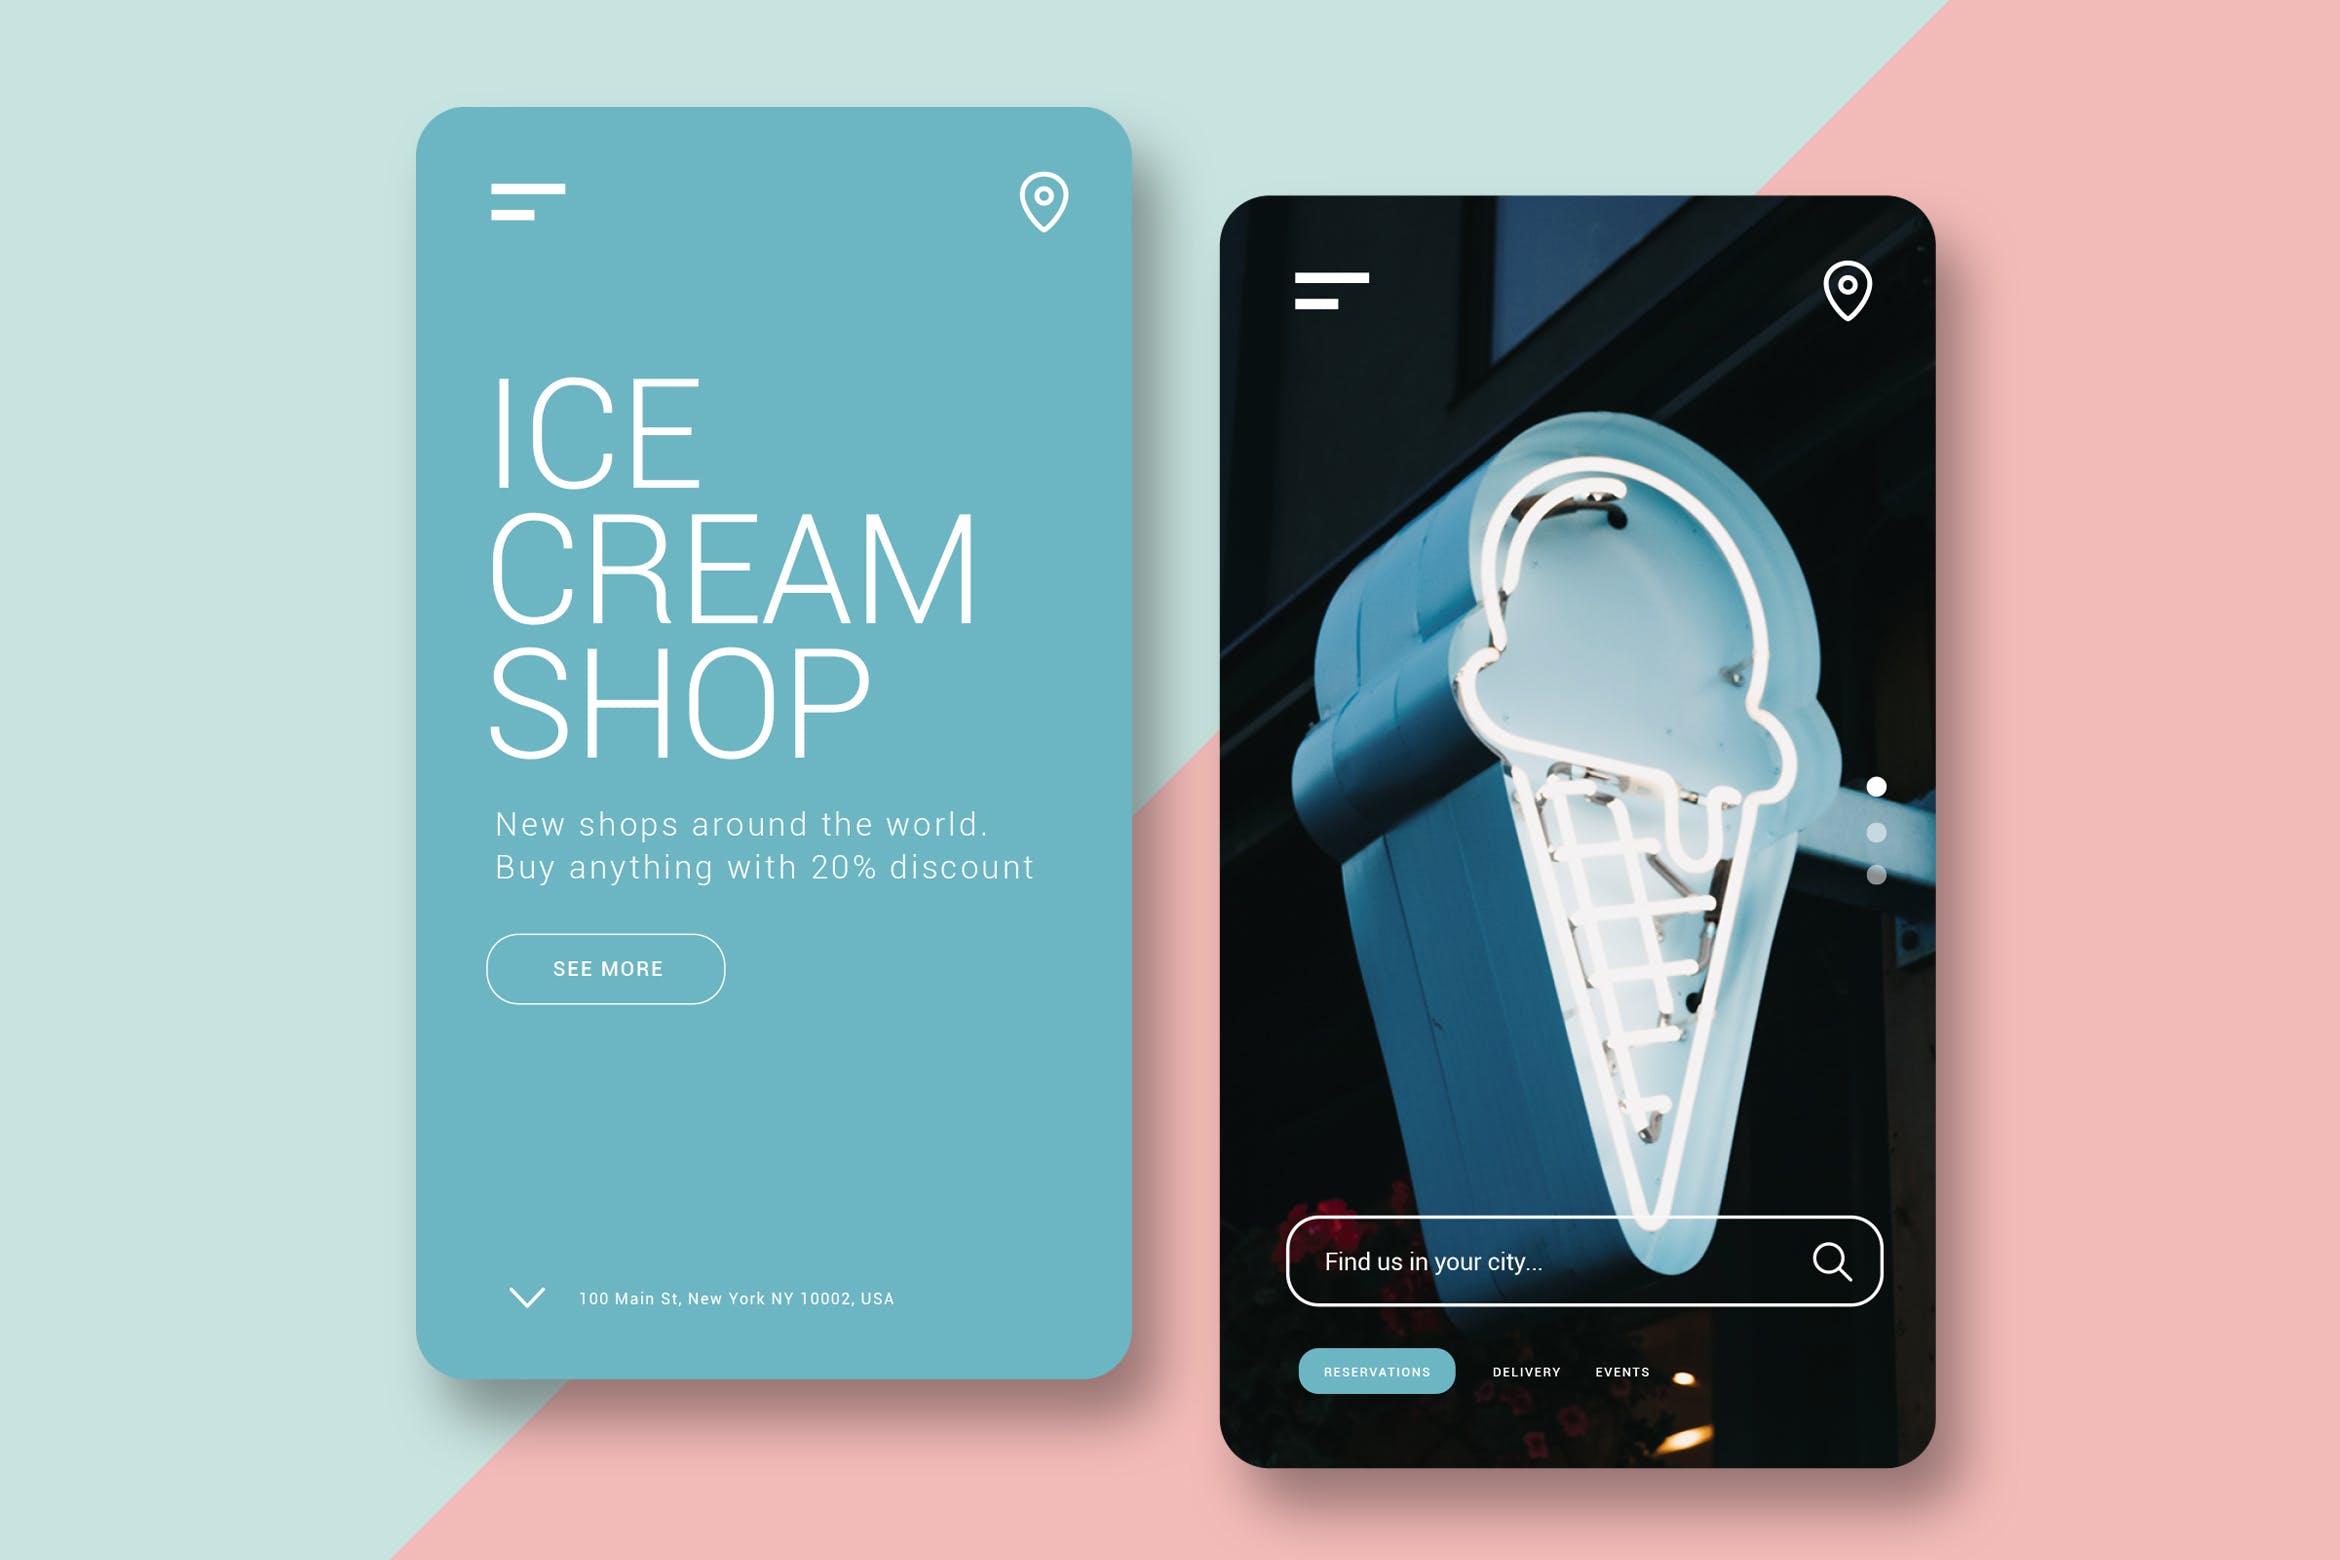 雪糕店/甜品品牌官网H5网站设计16图库精选模板 Ice Cream Shop – Mobile UI Kit插图